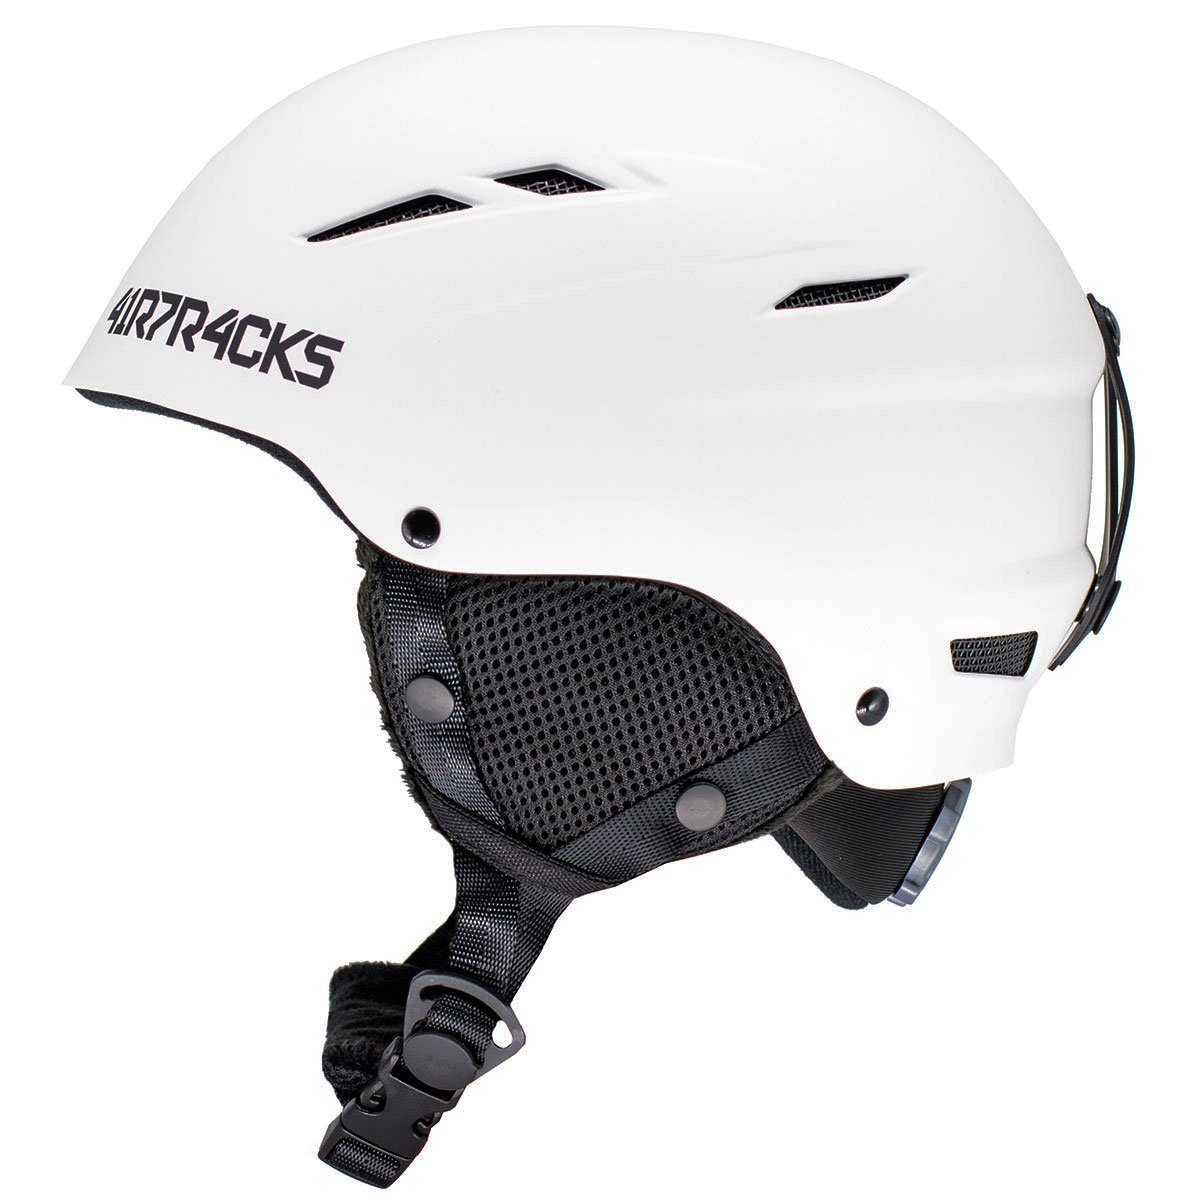 Airtracks Snowboardhelm Ski - Snowboard Helm STAR T-200 (für Herren und Damen mit Ventilationssystem & stufenloser Anpassung), - Farbe Matt » S- 48-51cm. M - 52-55cm, L- 56-60cm « weiß